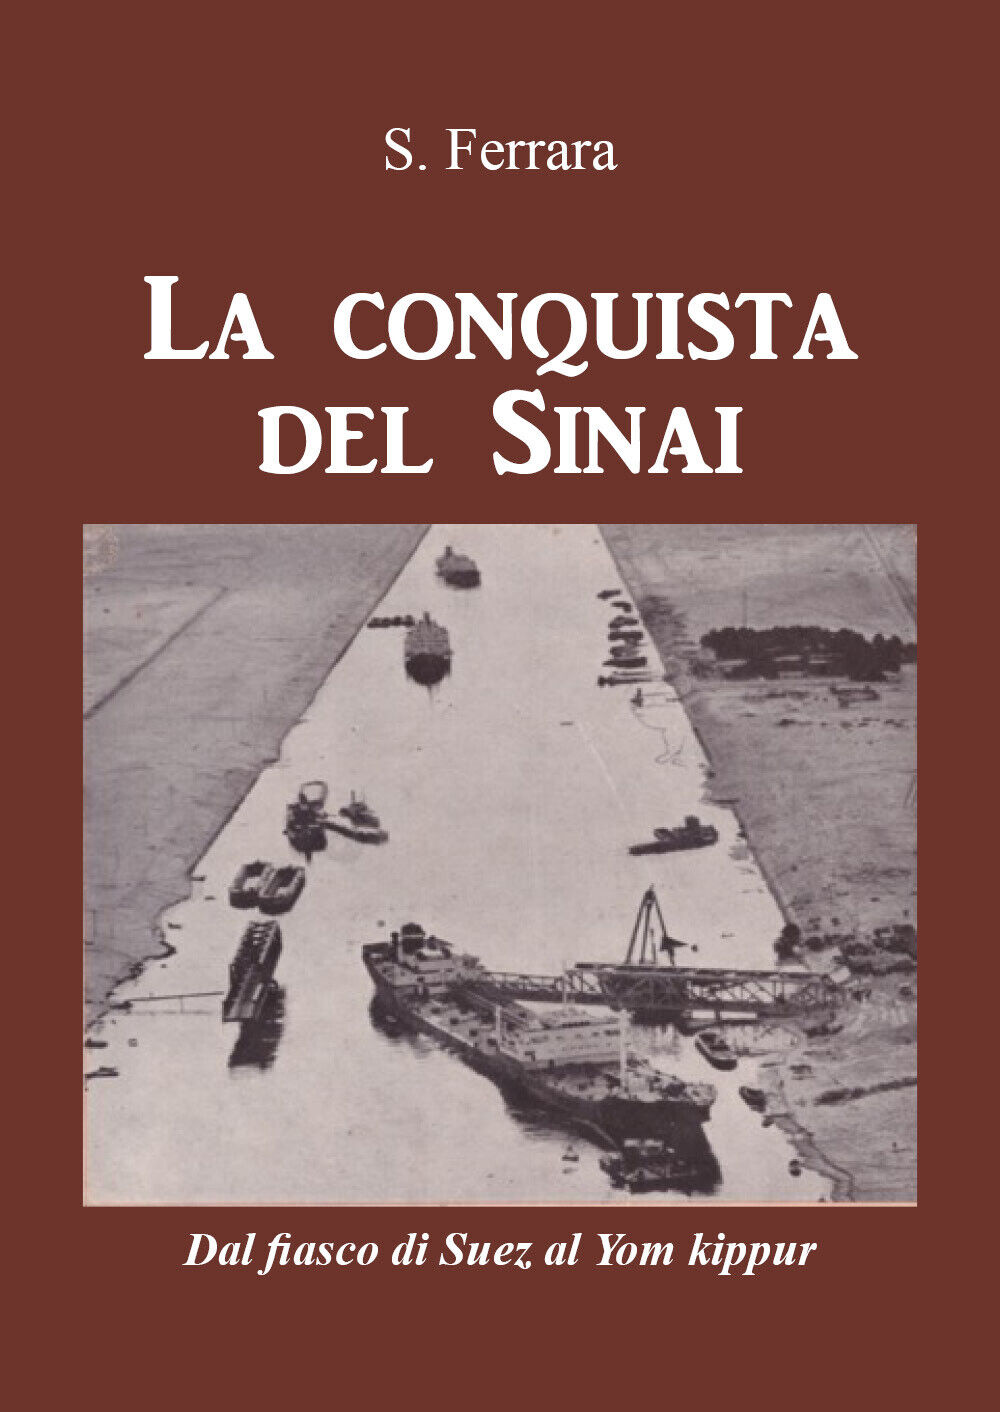 La conquista del Sinai. Dal fiasco di Suez al Yom Kippur di S. Ferrara,  2021,  